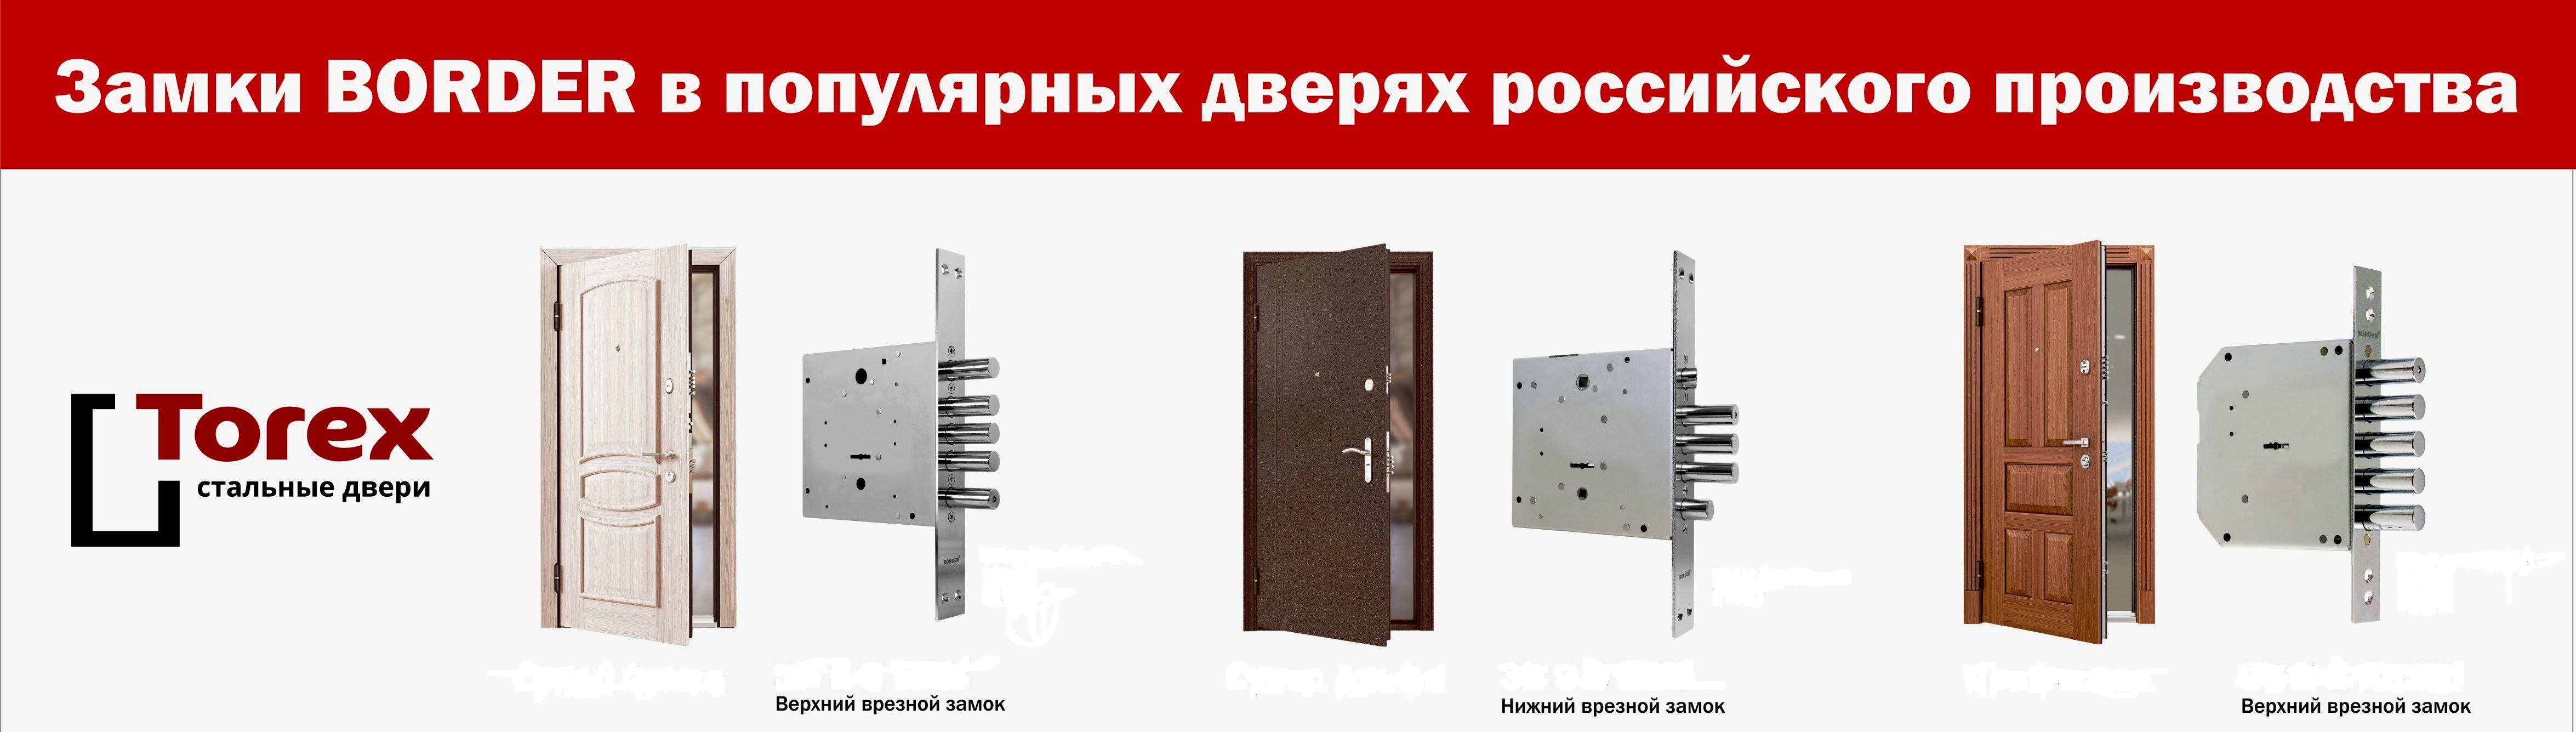 Как производится ремонт входных металлических дверей?